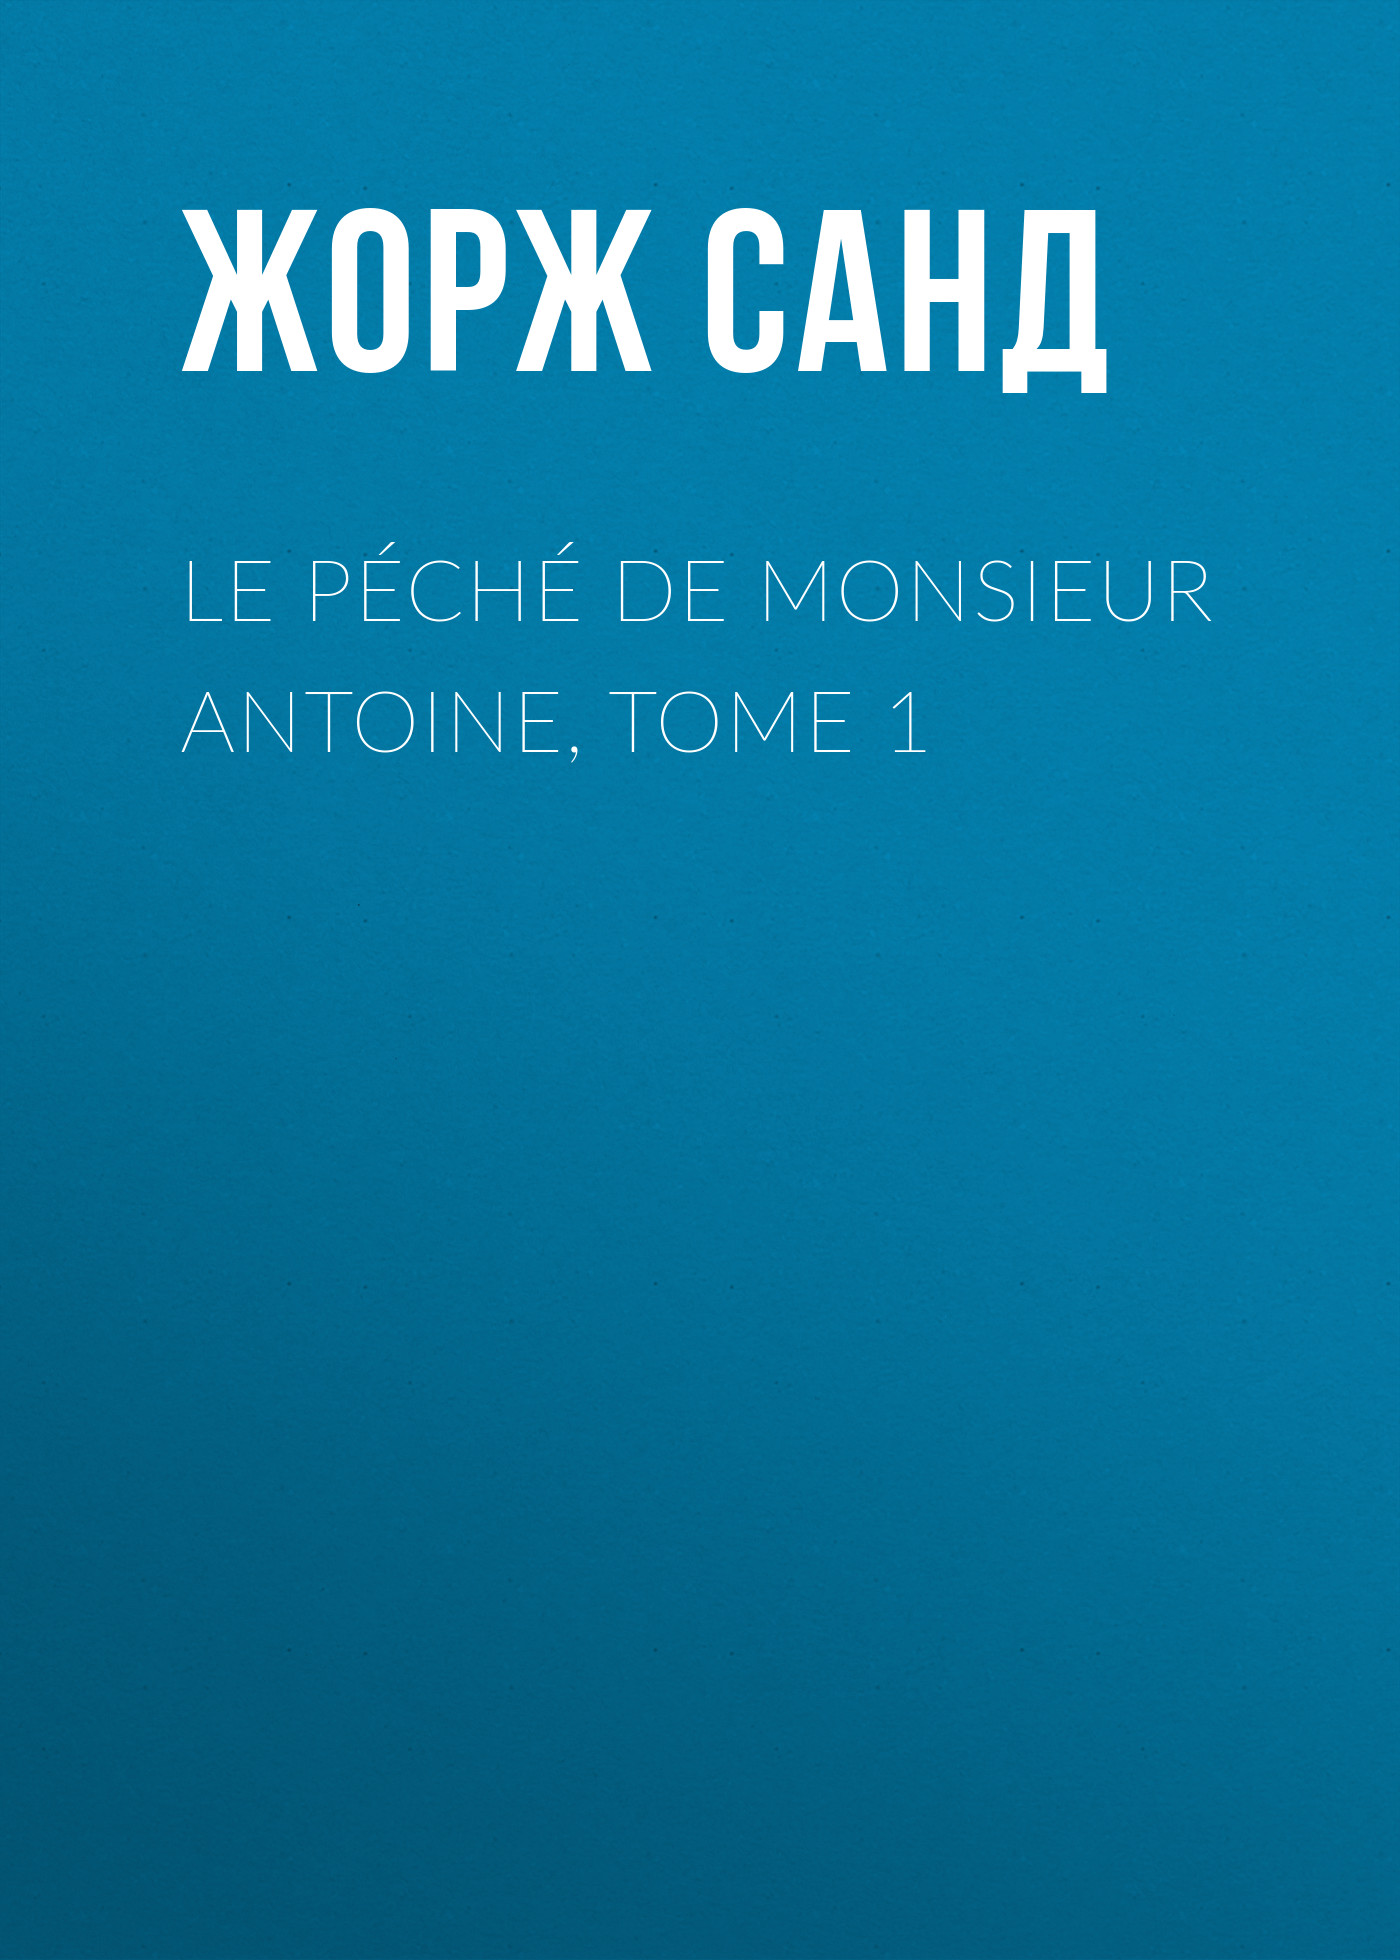 Книга Le péché de Monsieur Antoine, Tome 1 из серии , созданная Жорж Санд, может относится к жанру Литература 19 века, Зарубежная старинная литература, Зарубежная классика. Стоимость электронной книги Le péché de Monsieur Antoine, Tome 1 с идентификатором 25450796 составляет 0 руб.